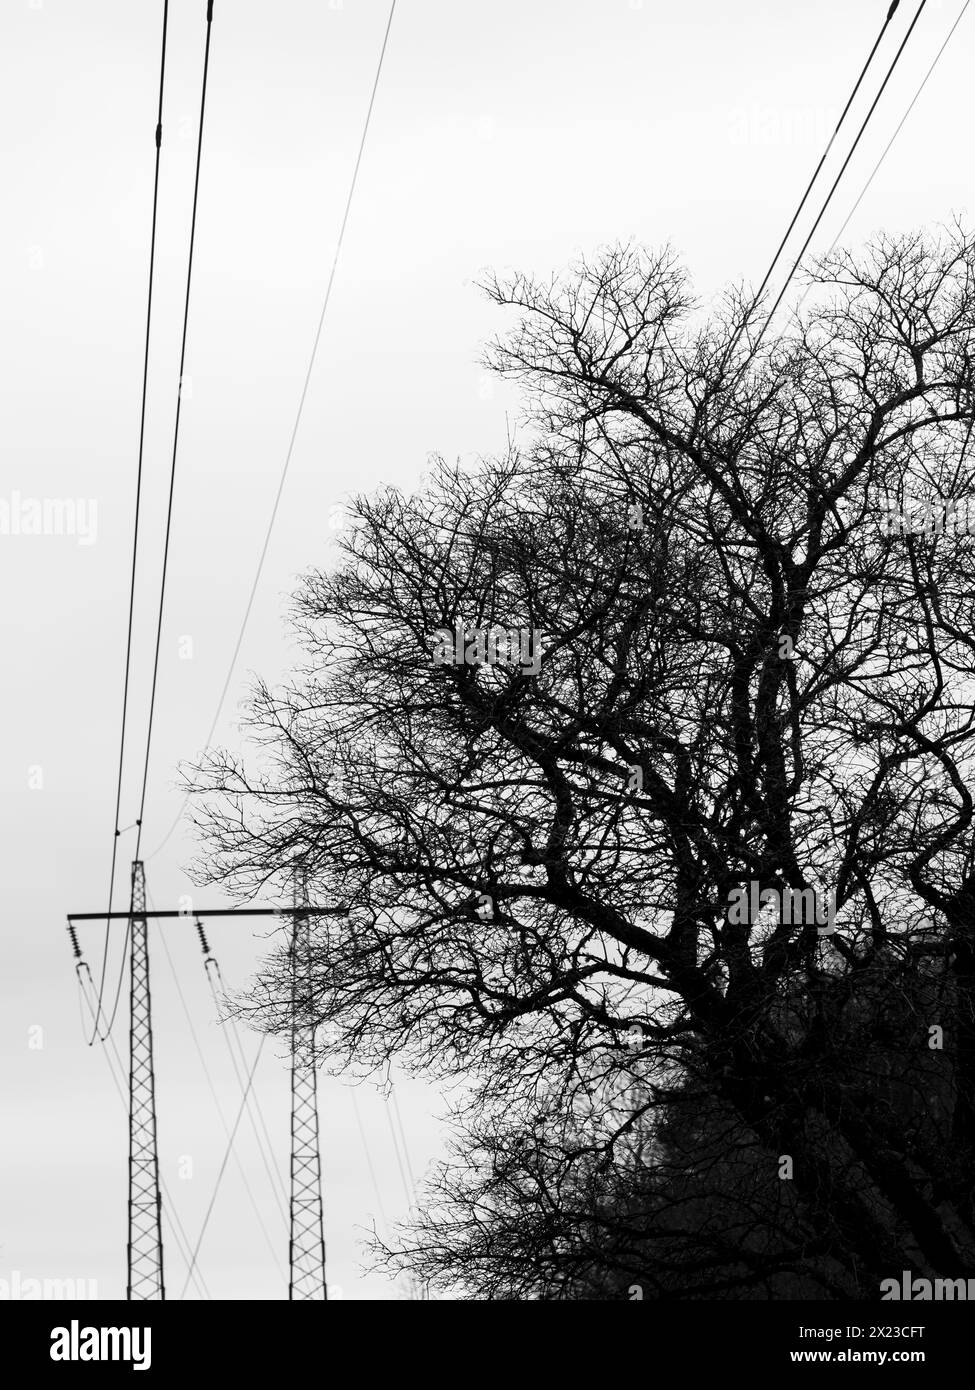 Eine schwarze und weiße Szene, die hohe Stromleitungen zeigt, die durch einen Baumhain schneiden. Der Kontrast zwischen den künstlichen Strukturen und dem Naturelem Stockfoto